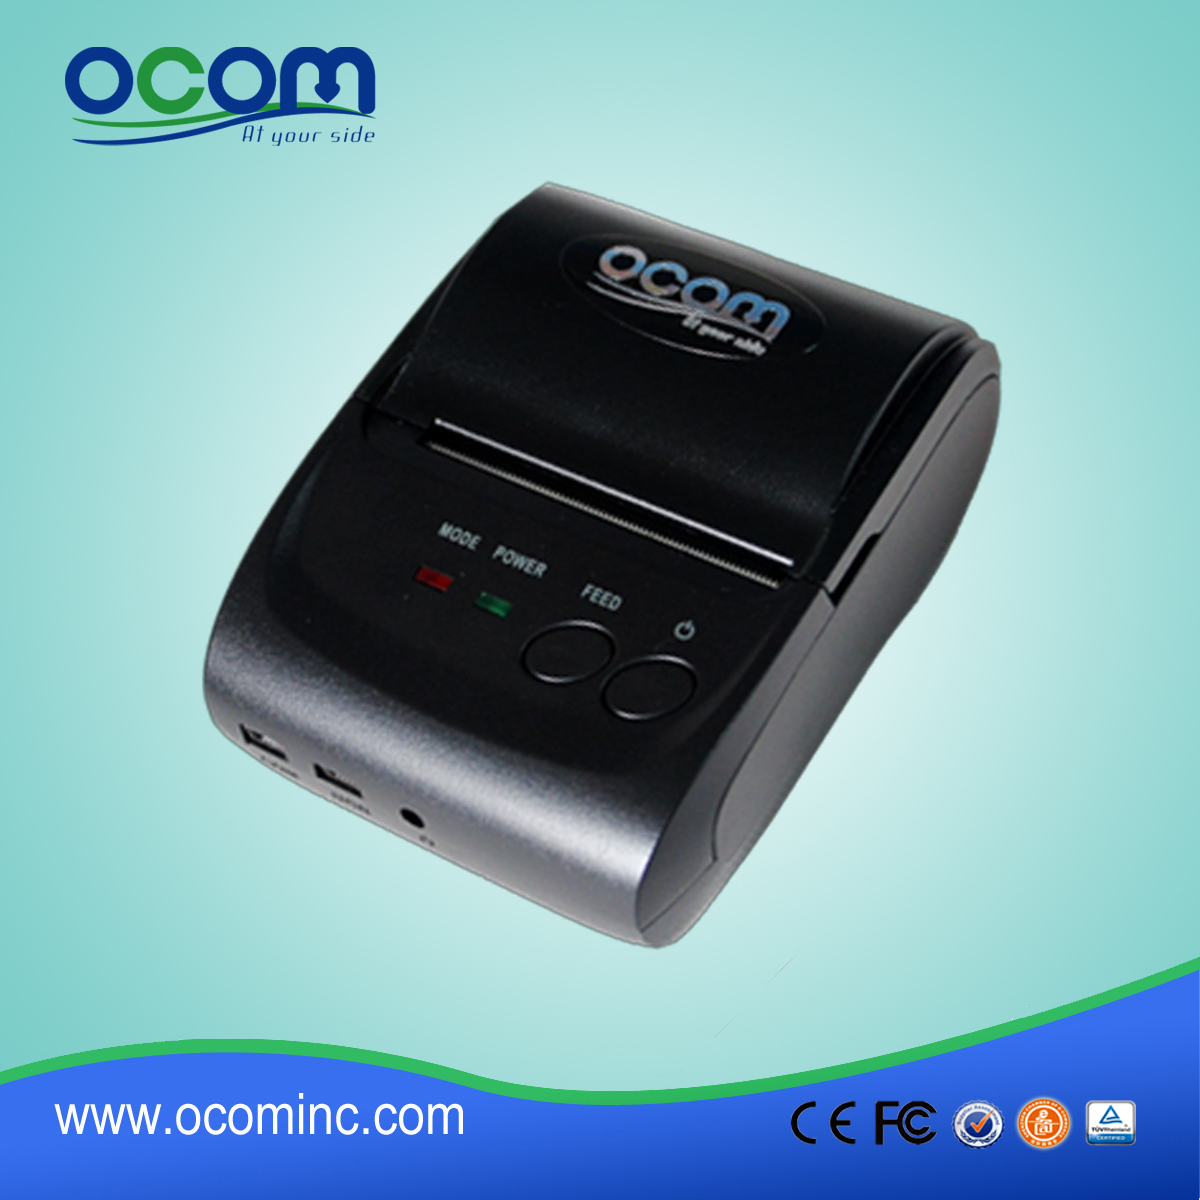 POS58 thermische ontvangst printer met goede prestaties (OCPP-M05)